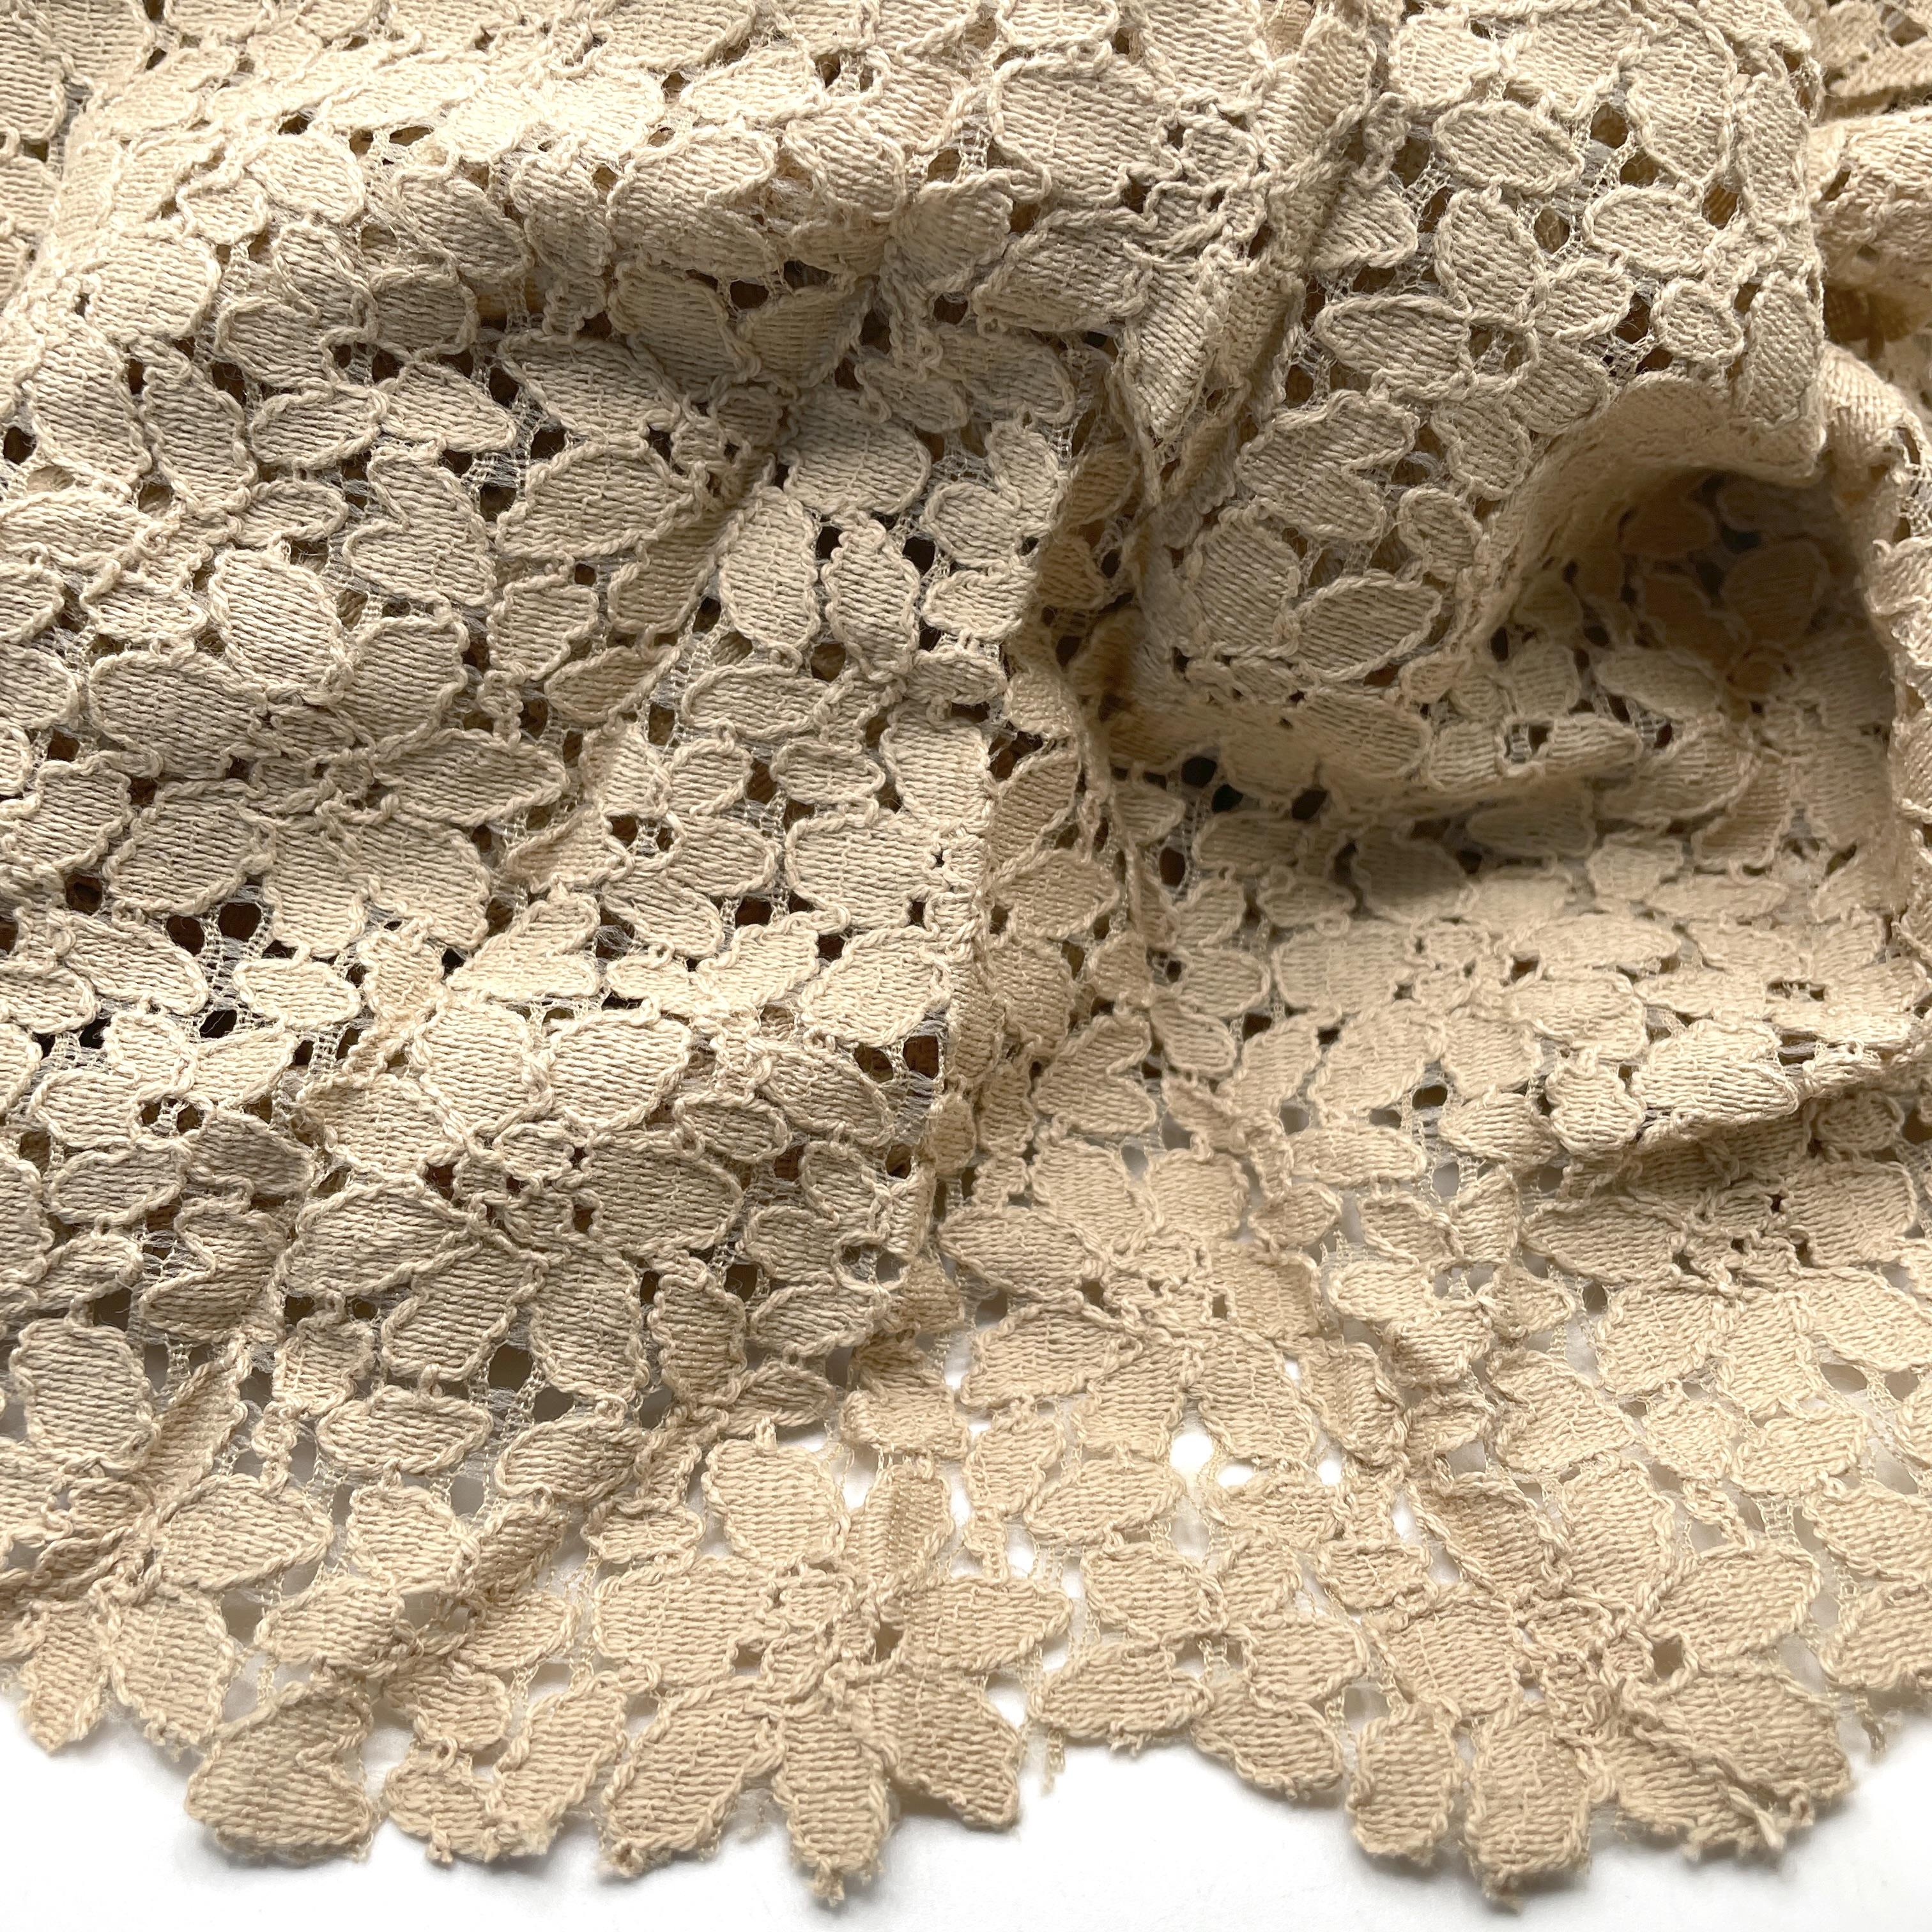 Fabric - Medium Weight - Non-Stretch 100% Cotton entredeux flower - BEIGE,  145cm wide x 1.4 metres, per piece